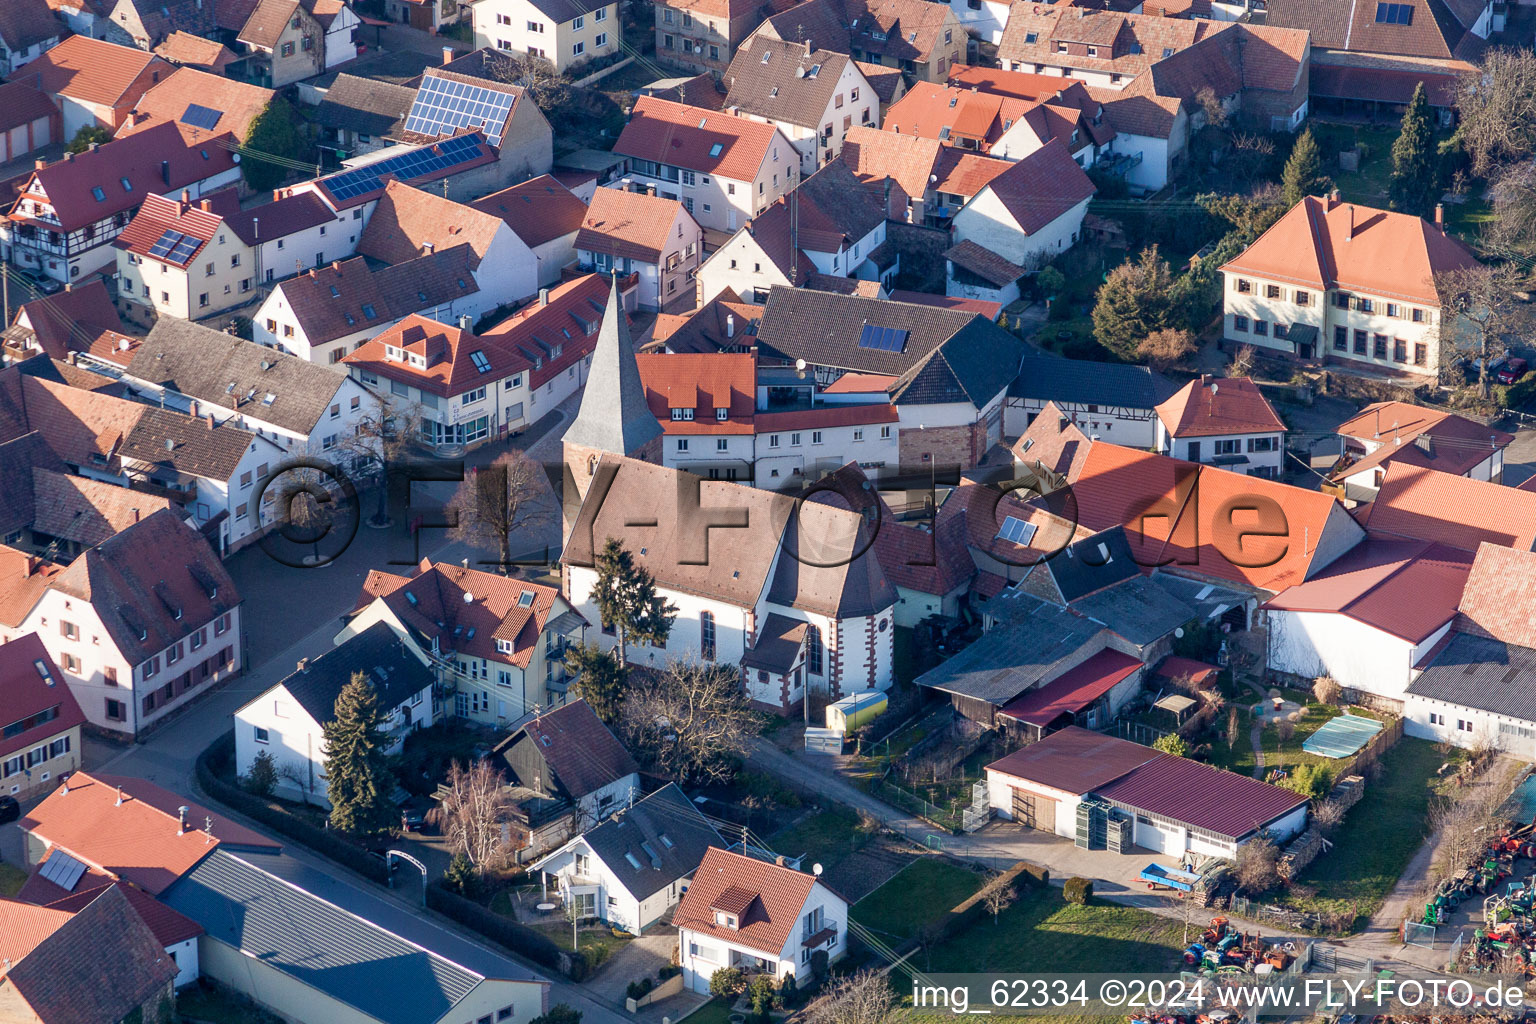 Aerial view of Church building in the village of in the district Schweigen in Schweigen-Rechtenbach in the state Rhineland-Palatinate, Germany